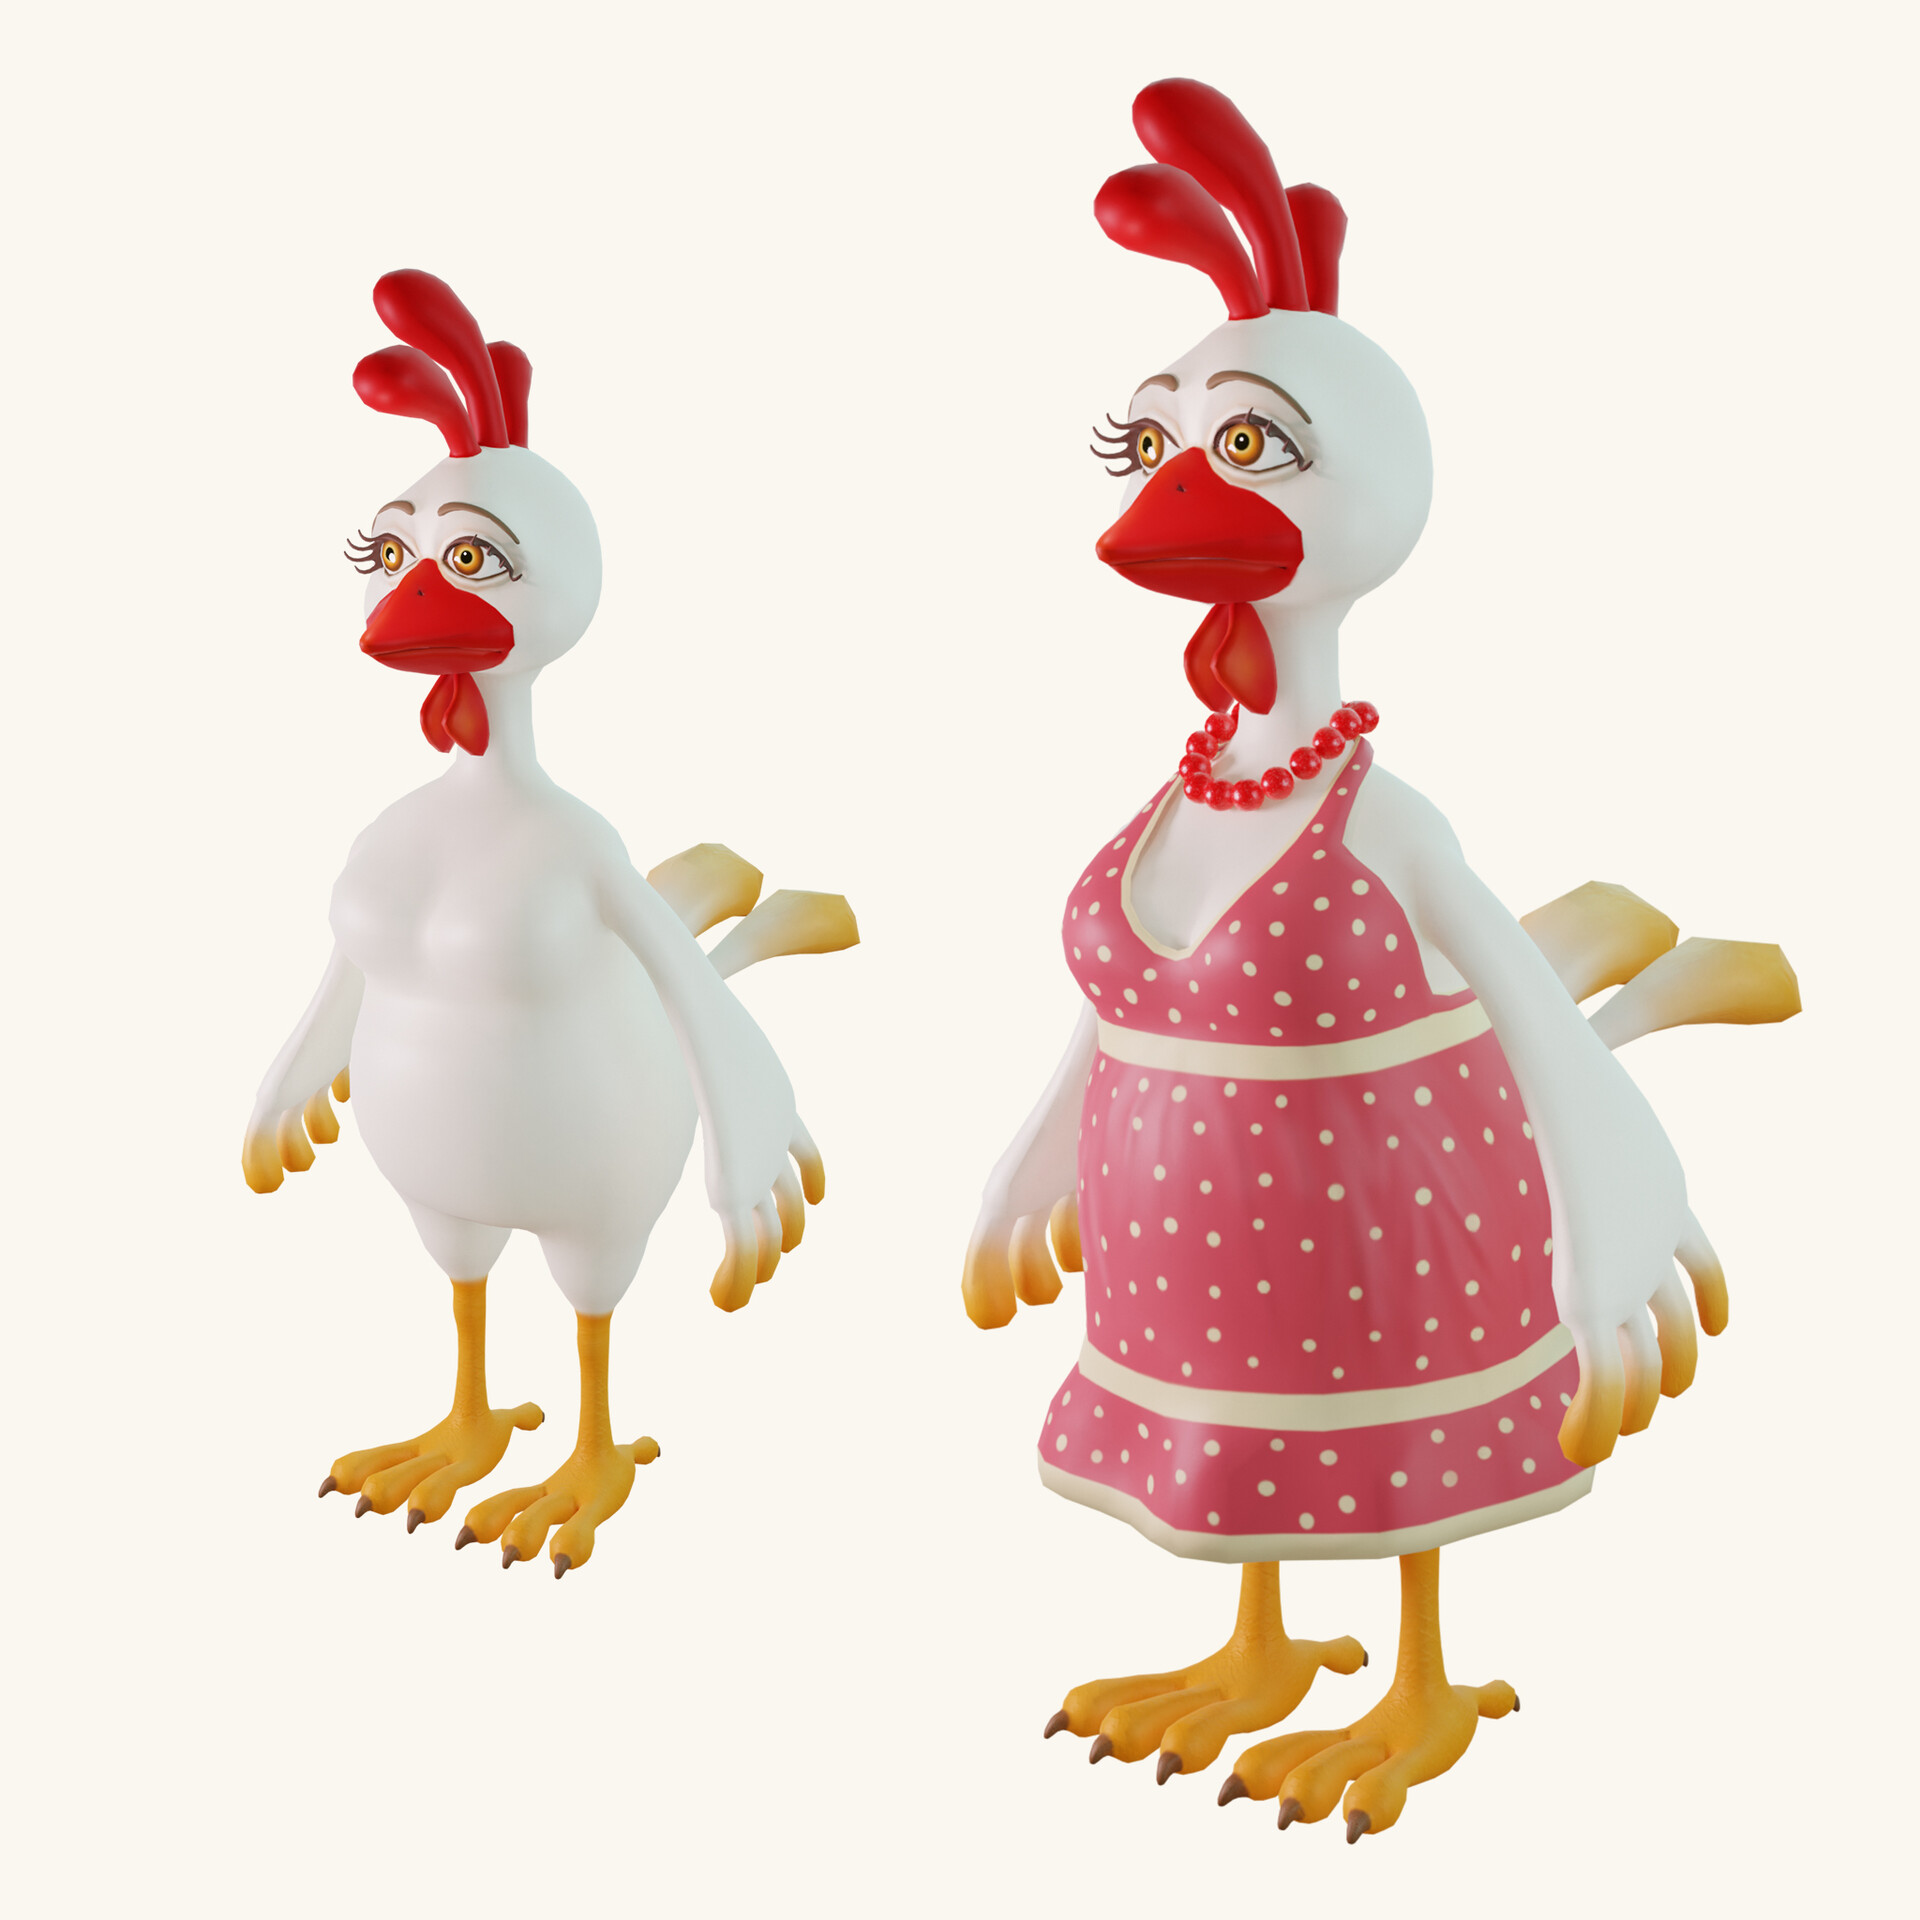 ArtStation - Stylized cartoon character chicken 3d model